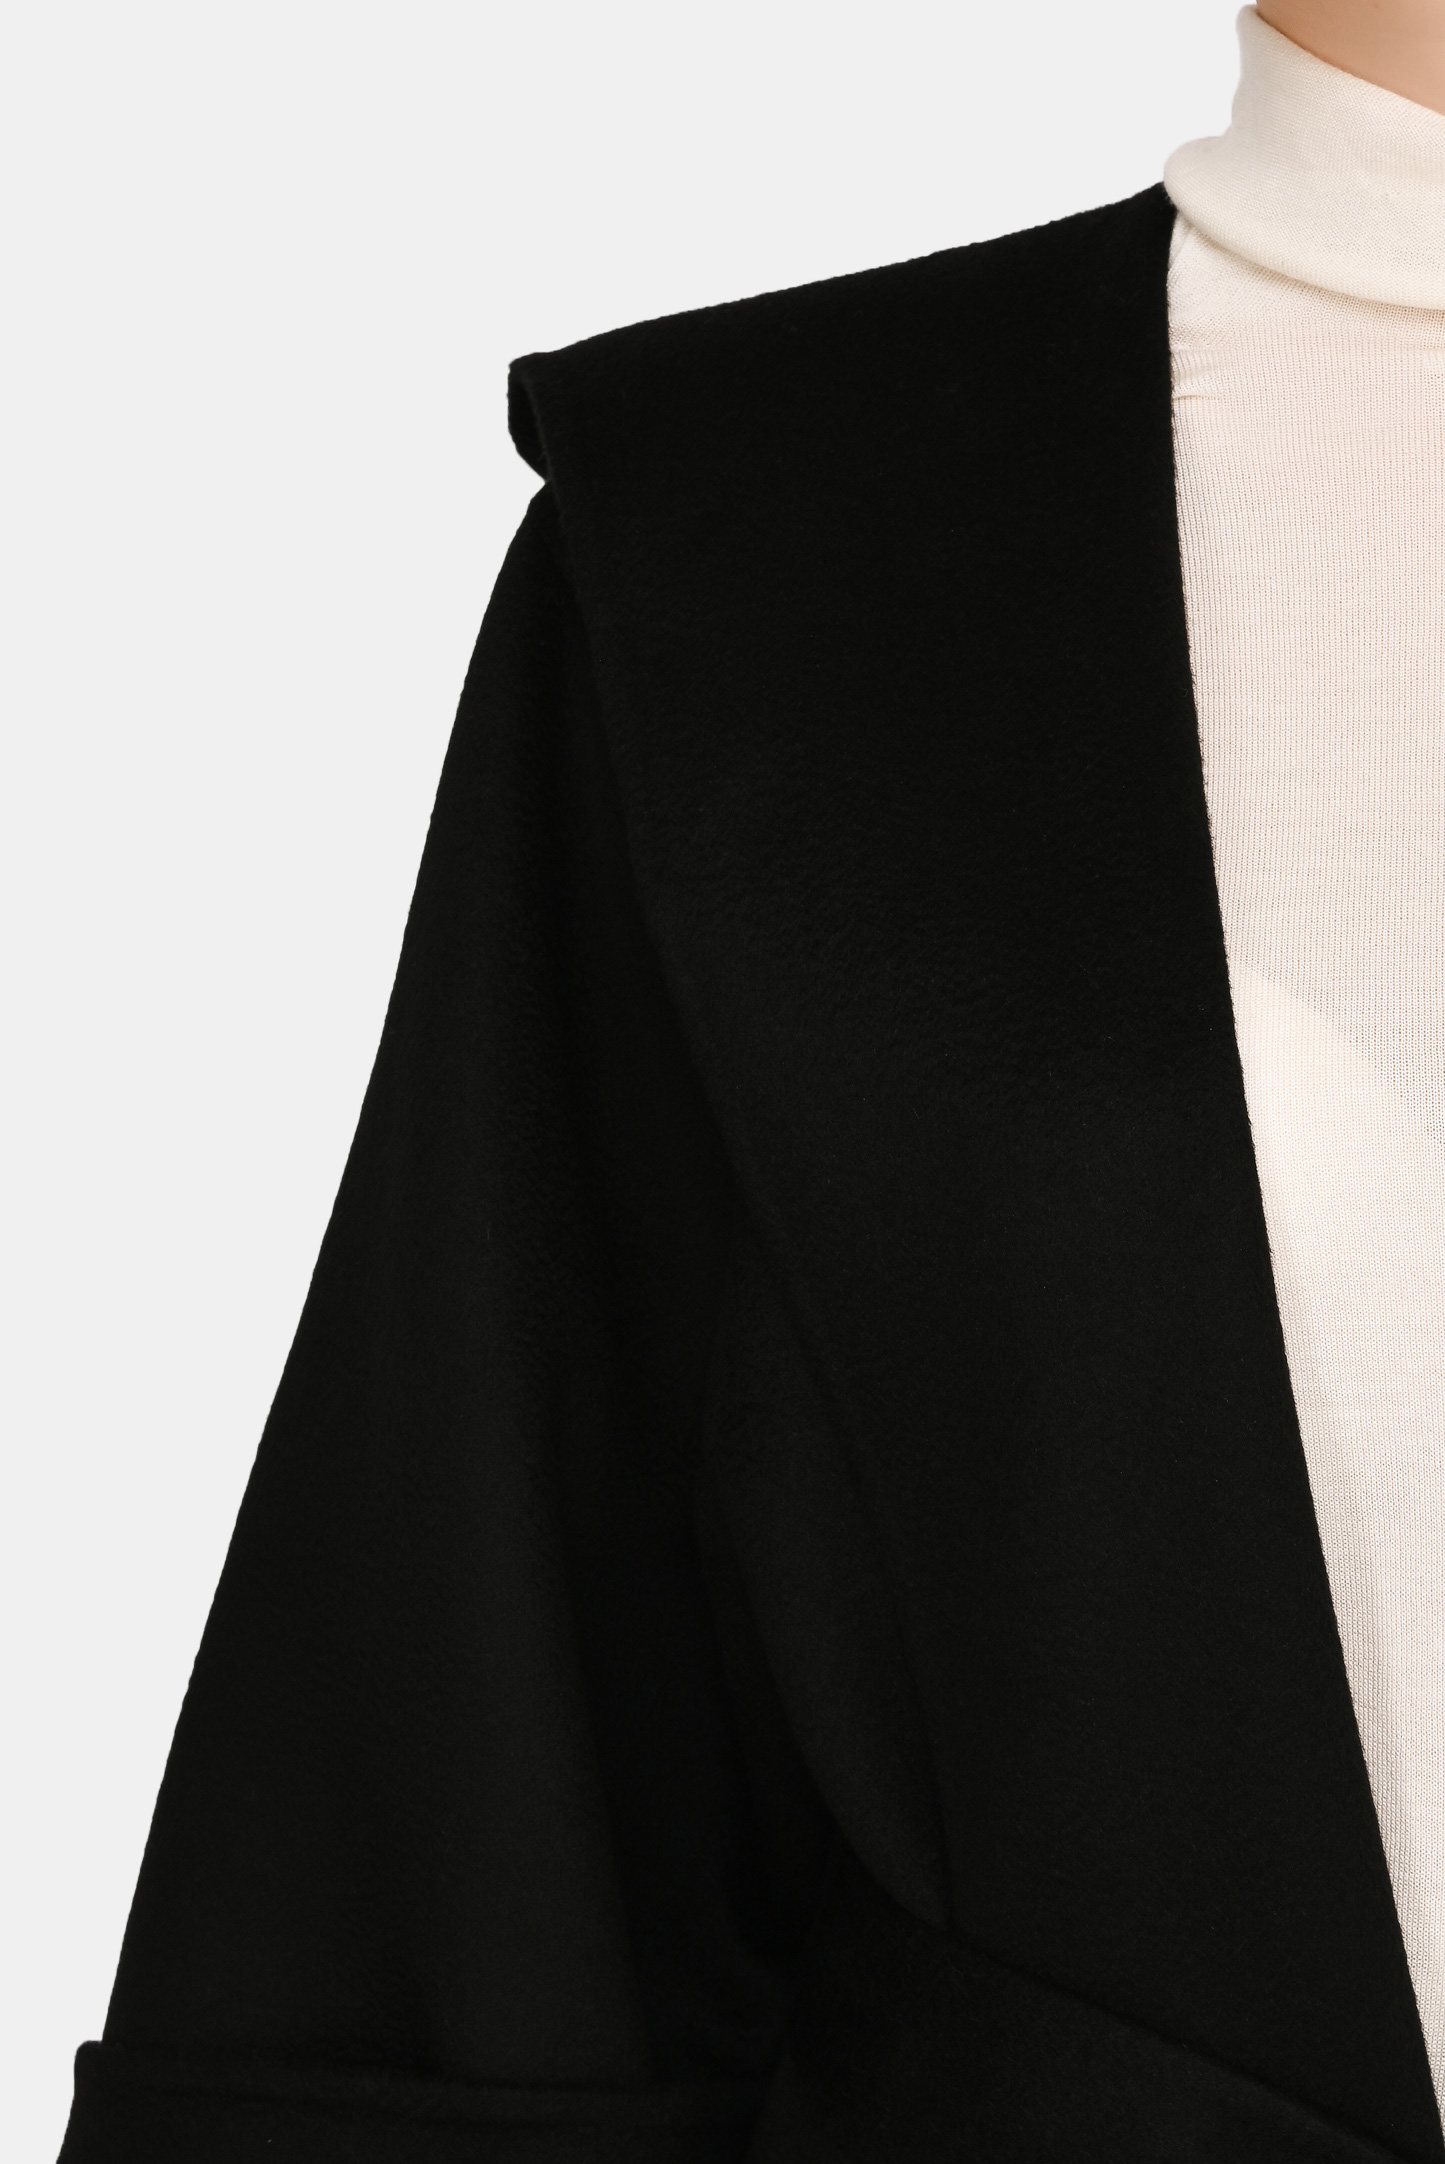 Пальто PRADA P685N S 202, цвет: Черный, Женский